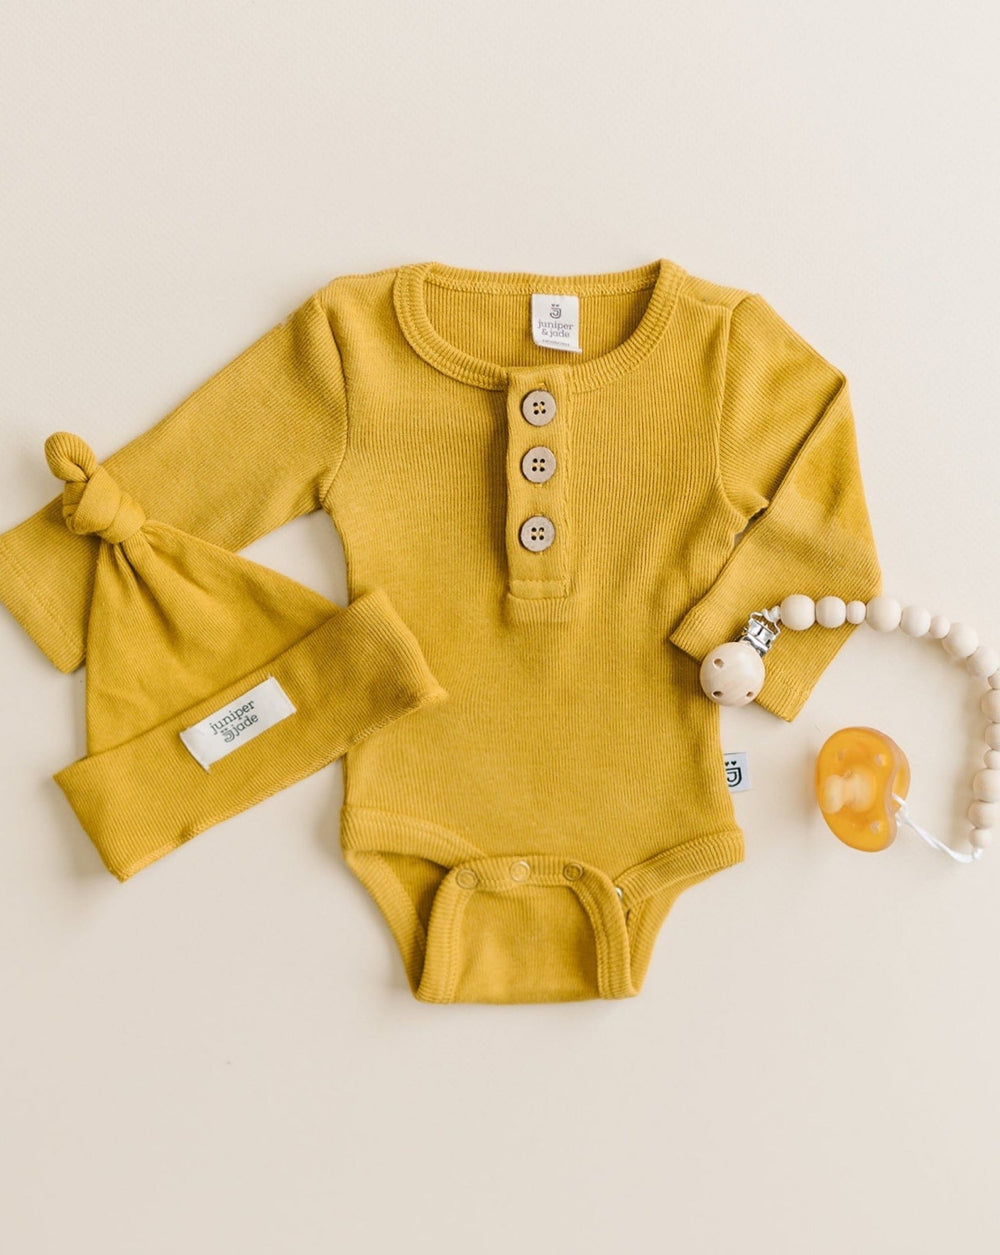 Organic 3 Button Bodysuit, Mustard - Baby & Toddler Clothing - LUCKY PANDA KIDS